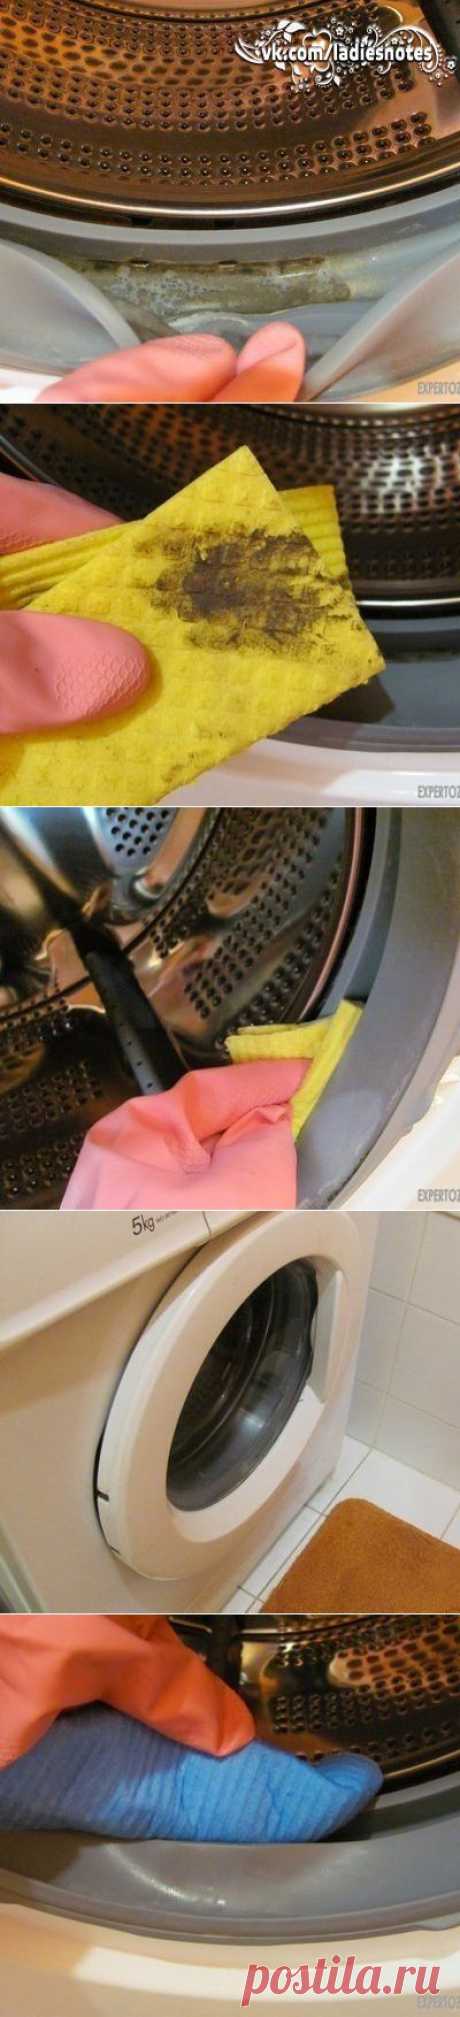 Чистка стиральной машины от плесени | Женский журнал